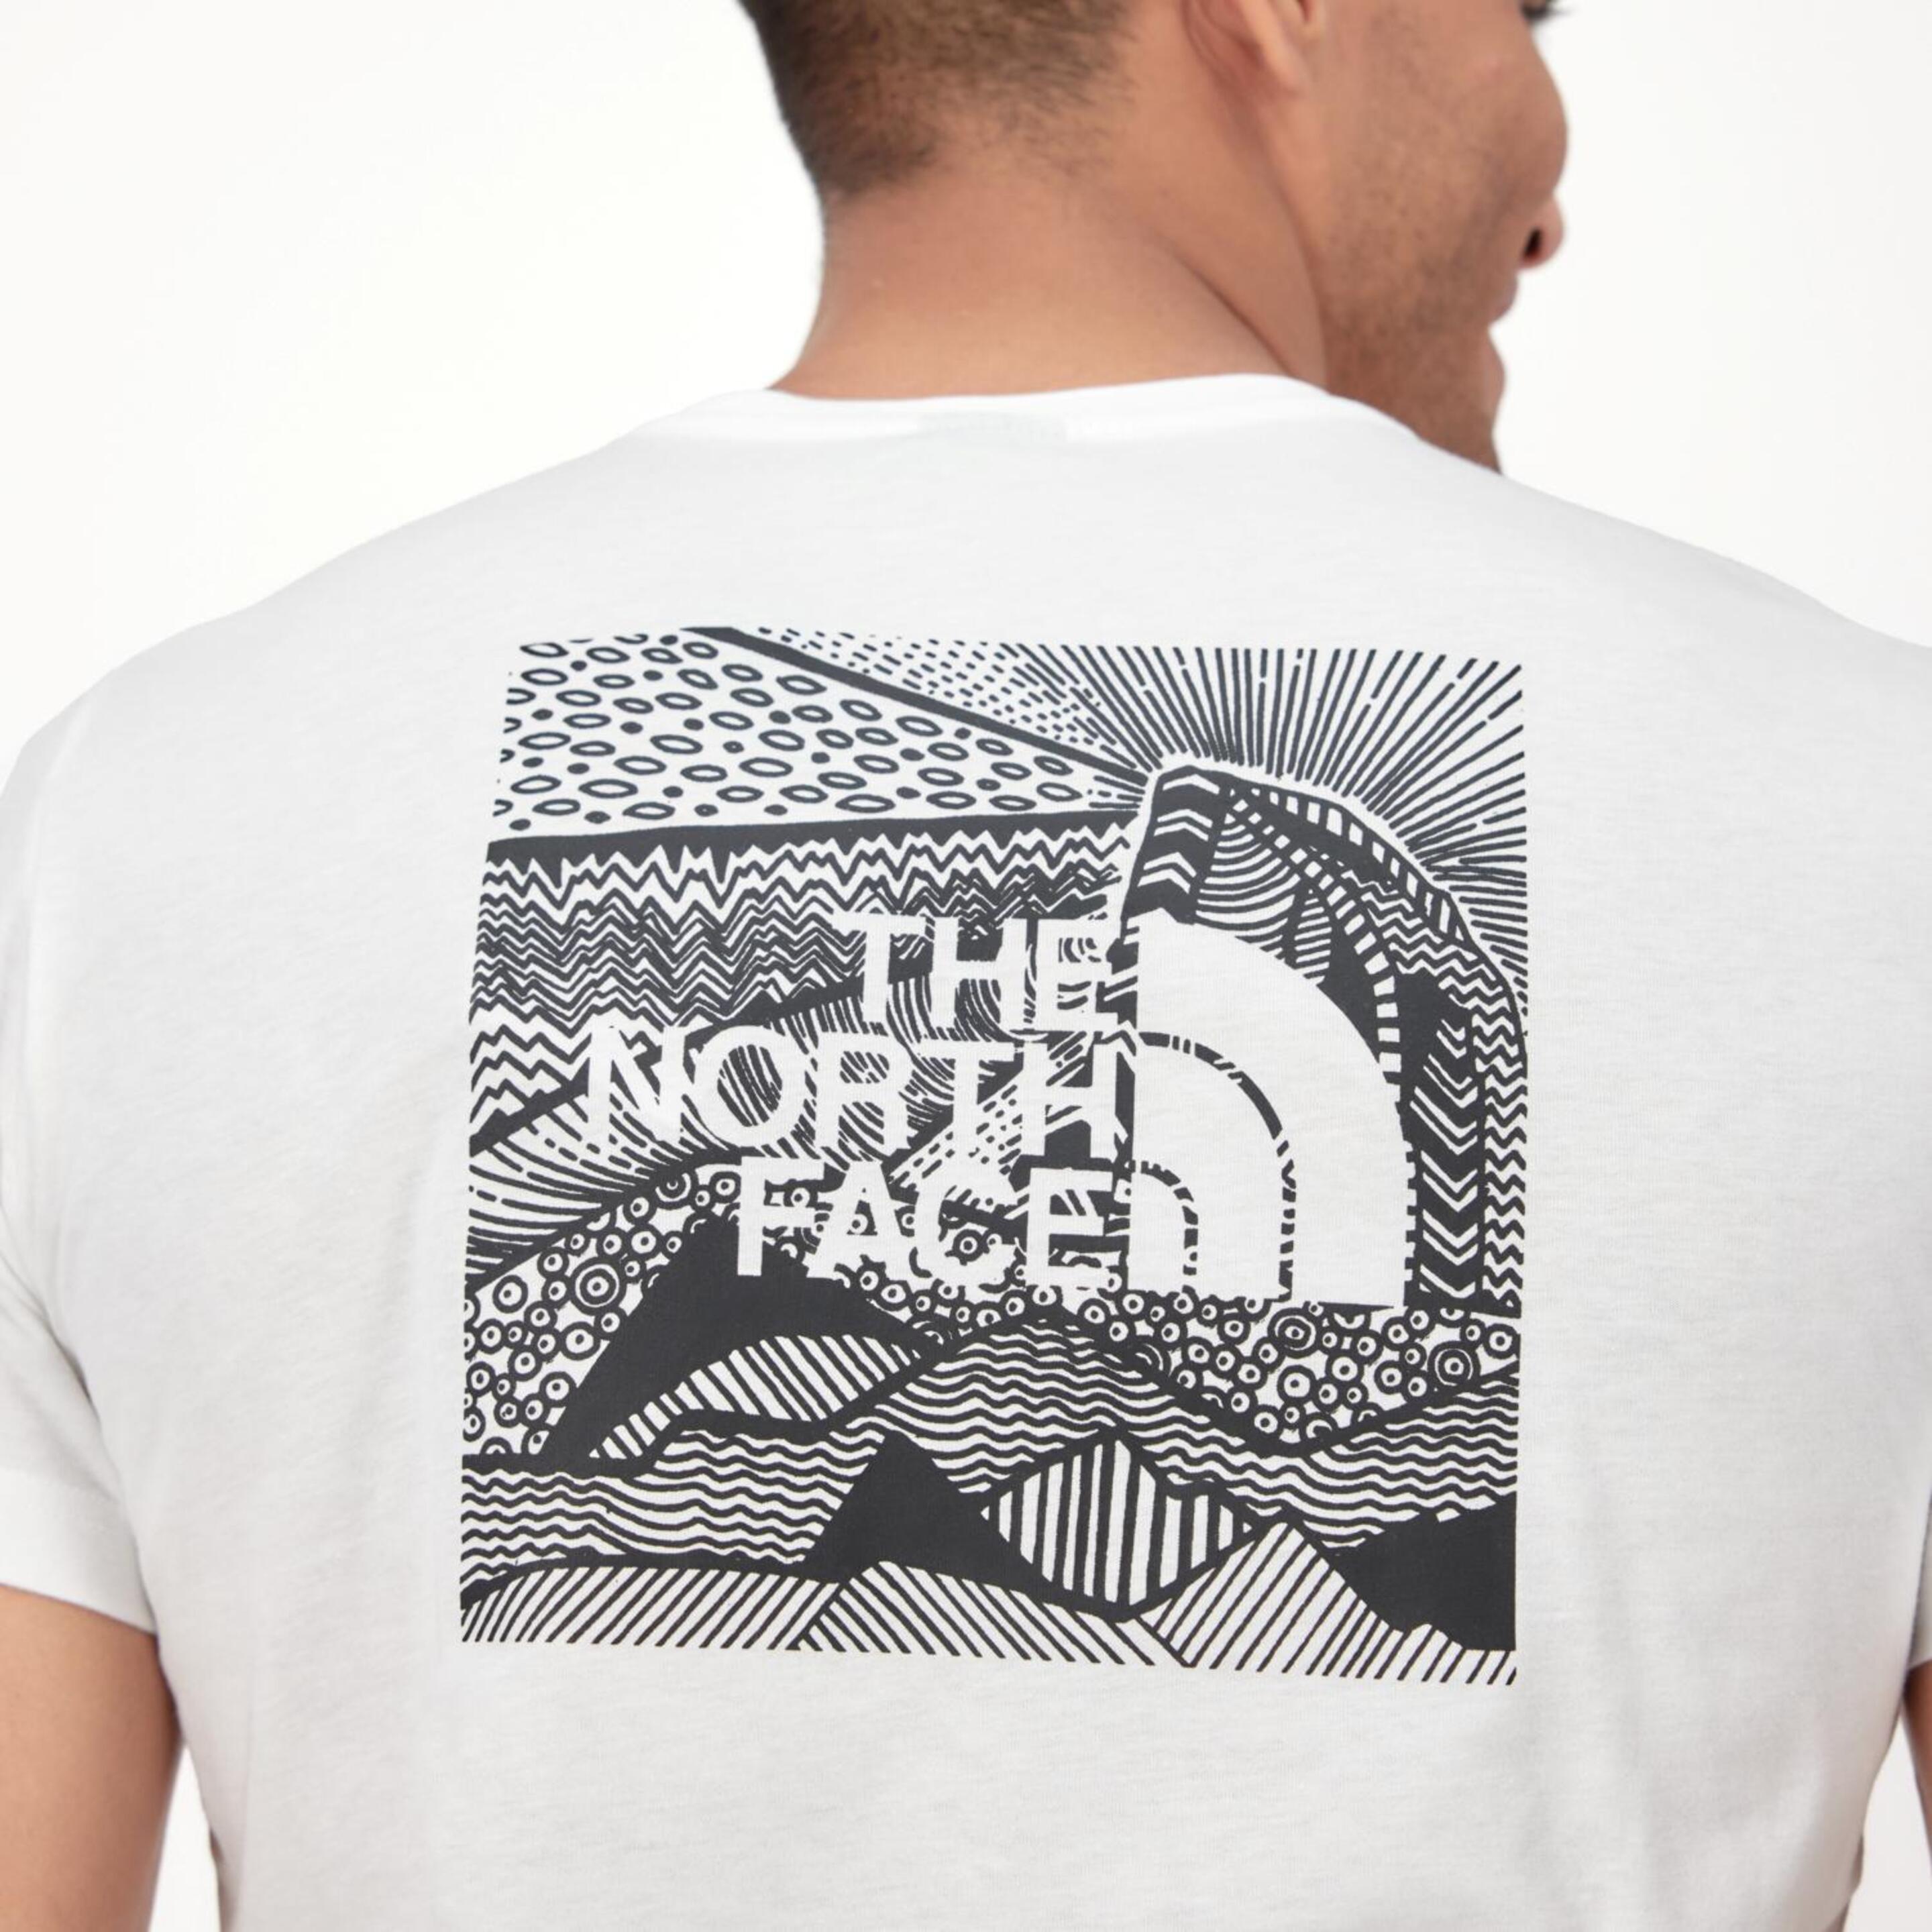 The North Face Redbox Celebration - Blanco - Camiseta Montaña Hombre